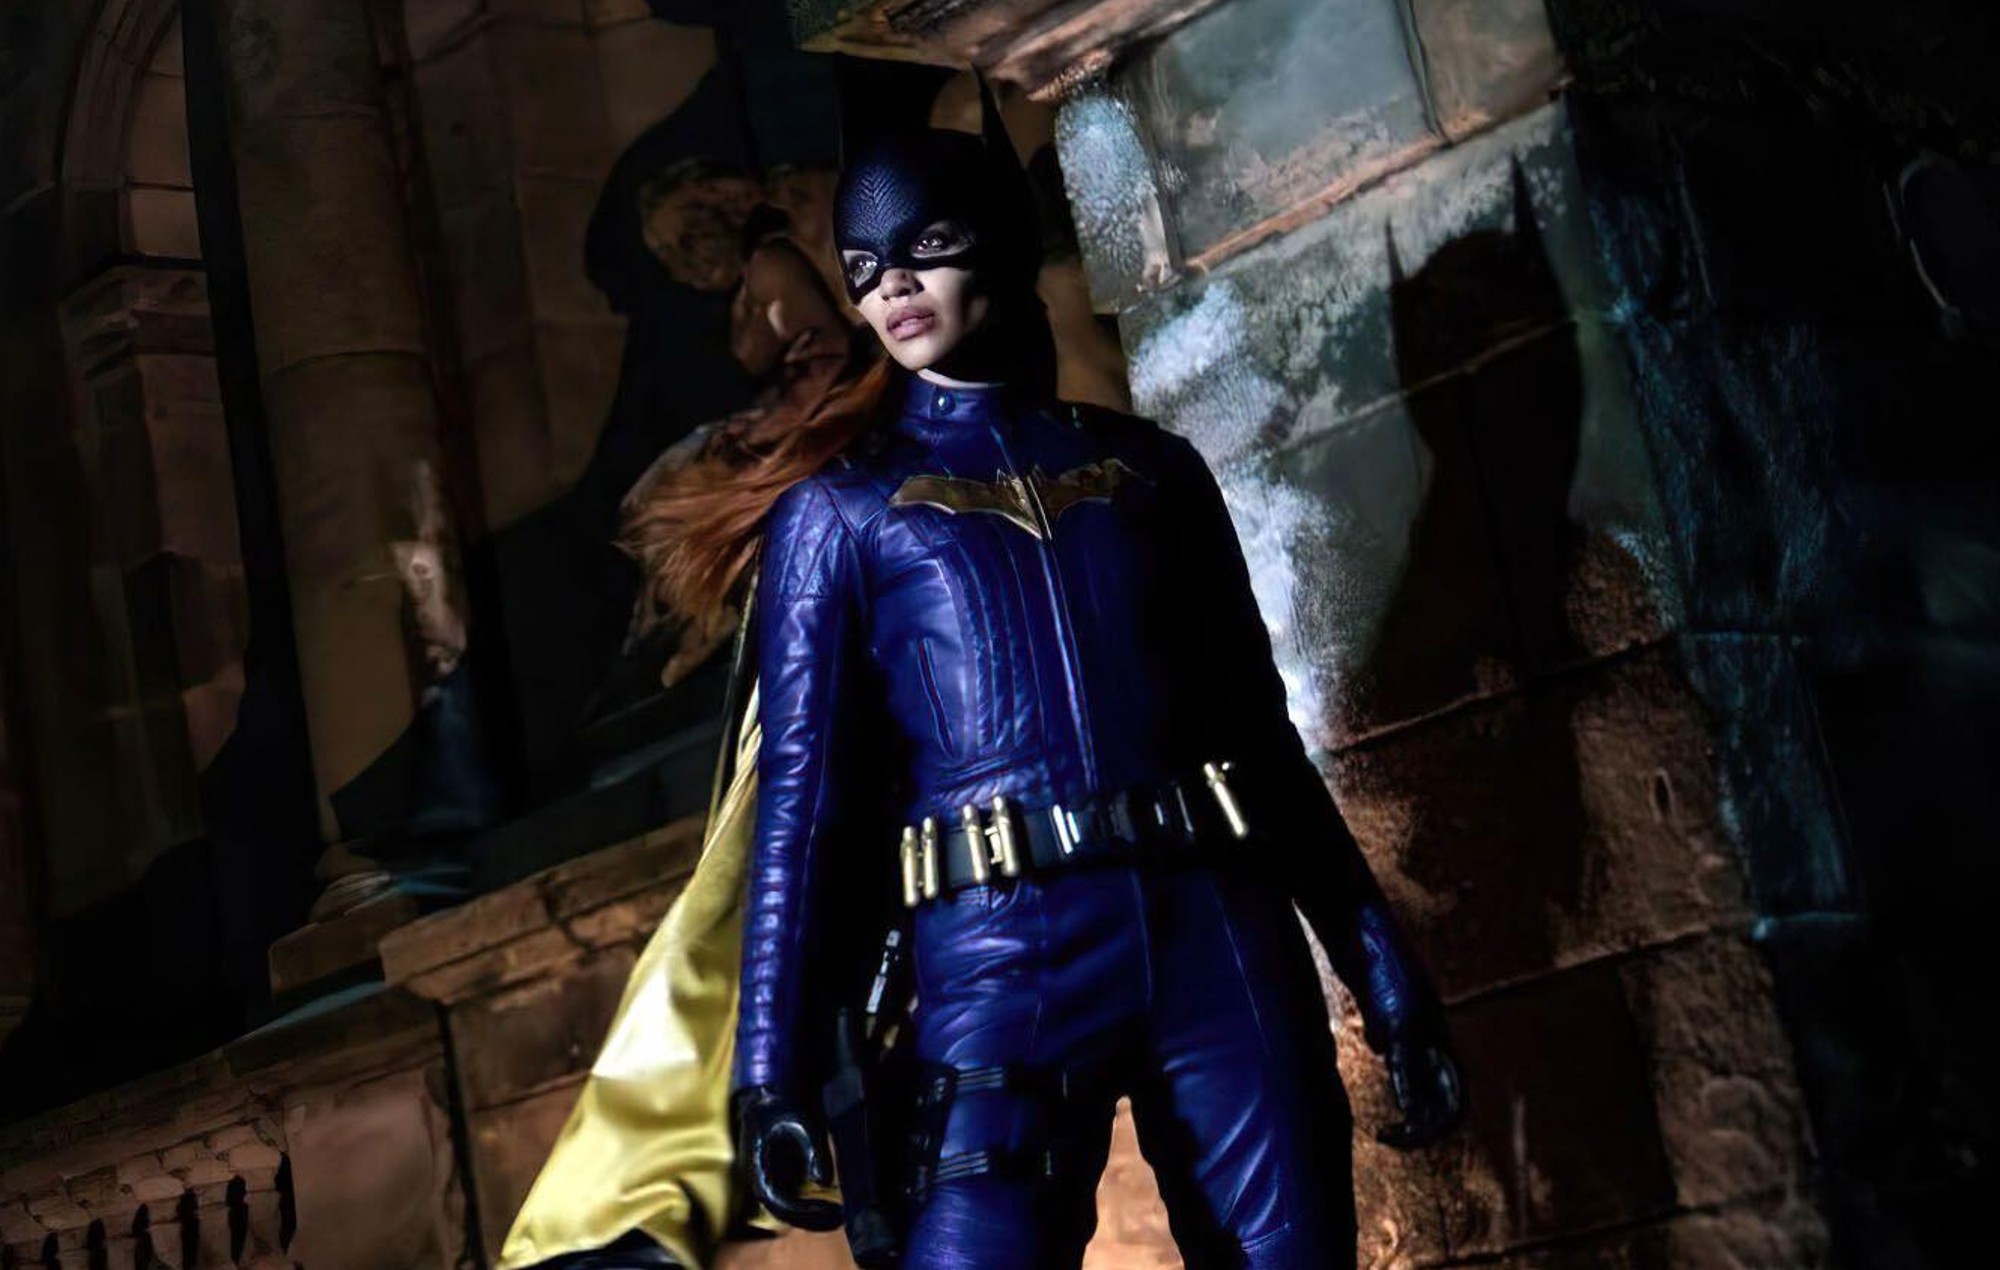 Los directores de 'Batgirl' no pueden acceder a las imágenes tras la retirada de la película por parte del estudio